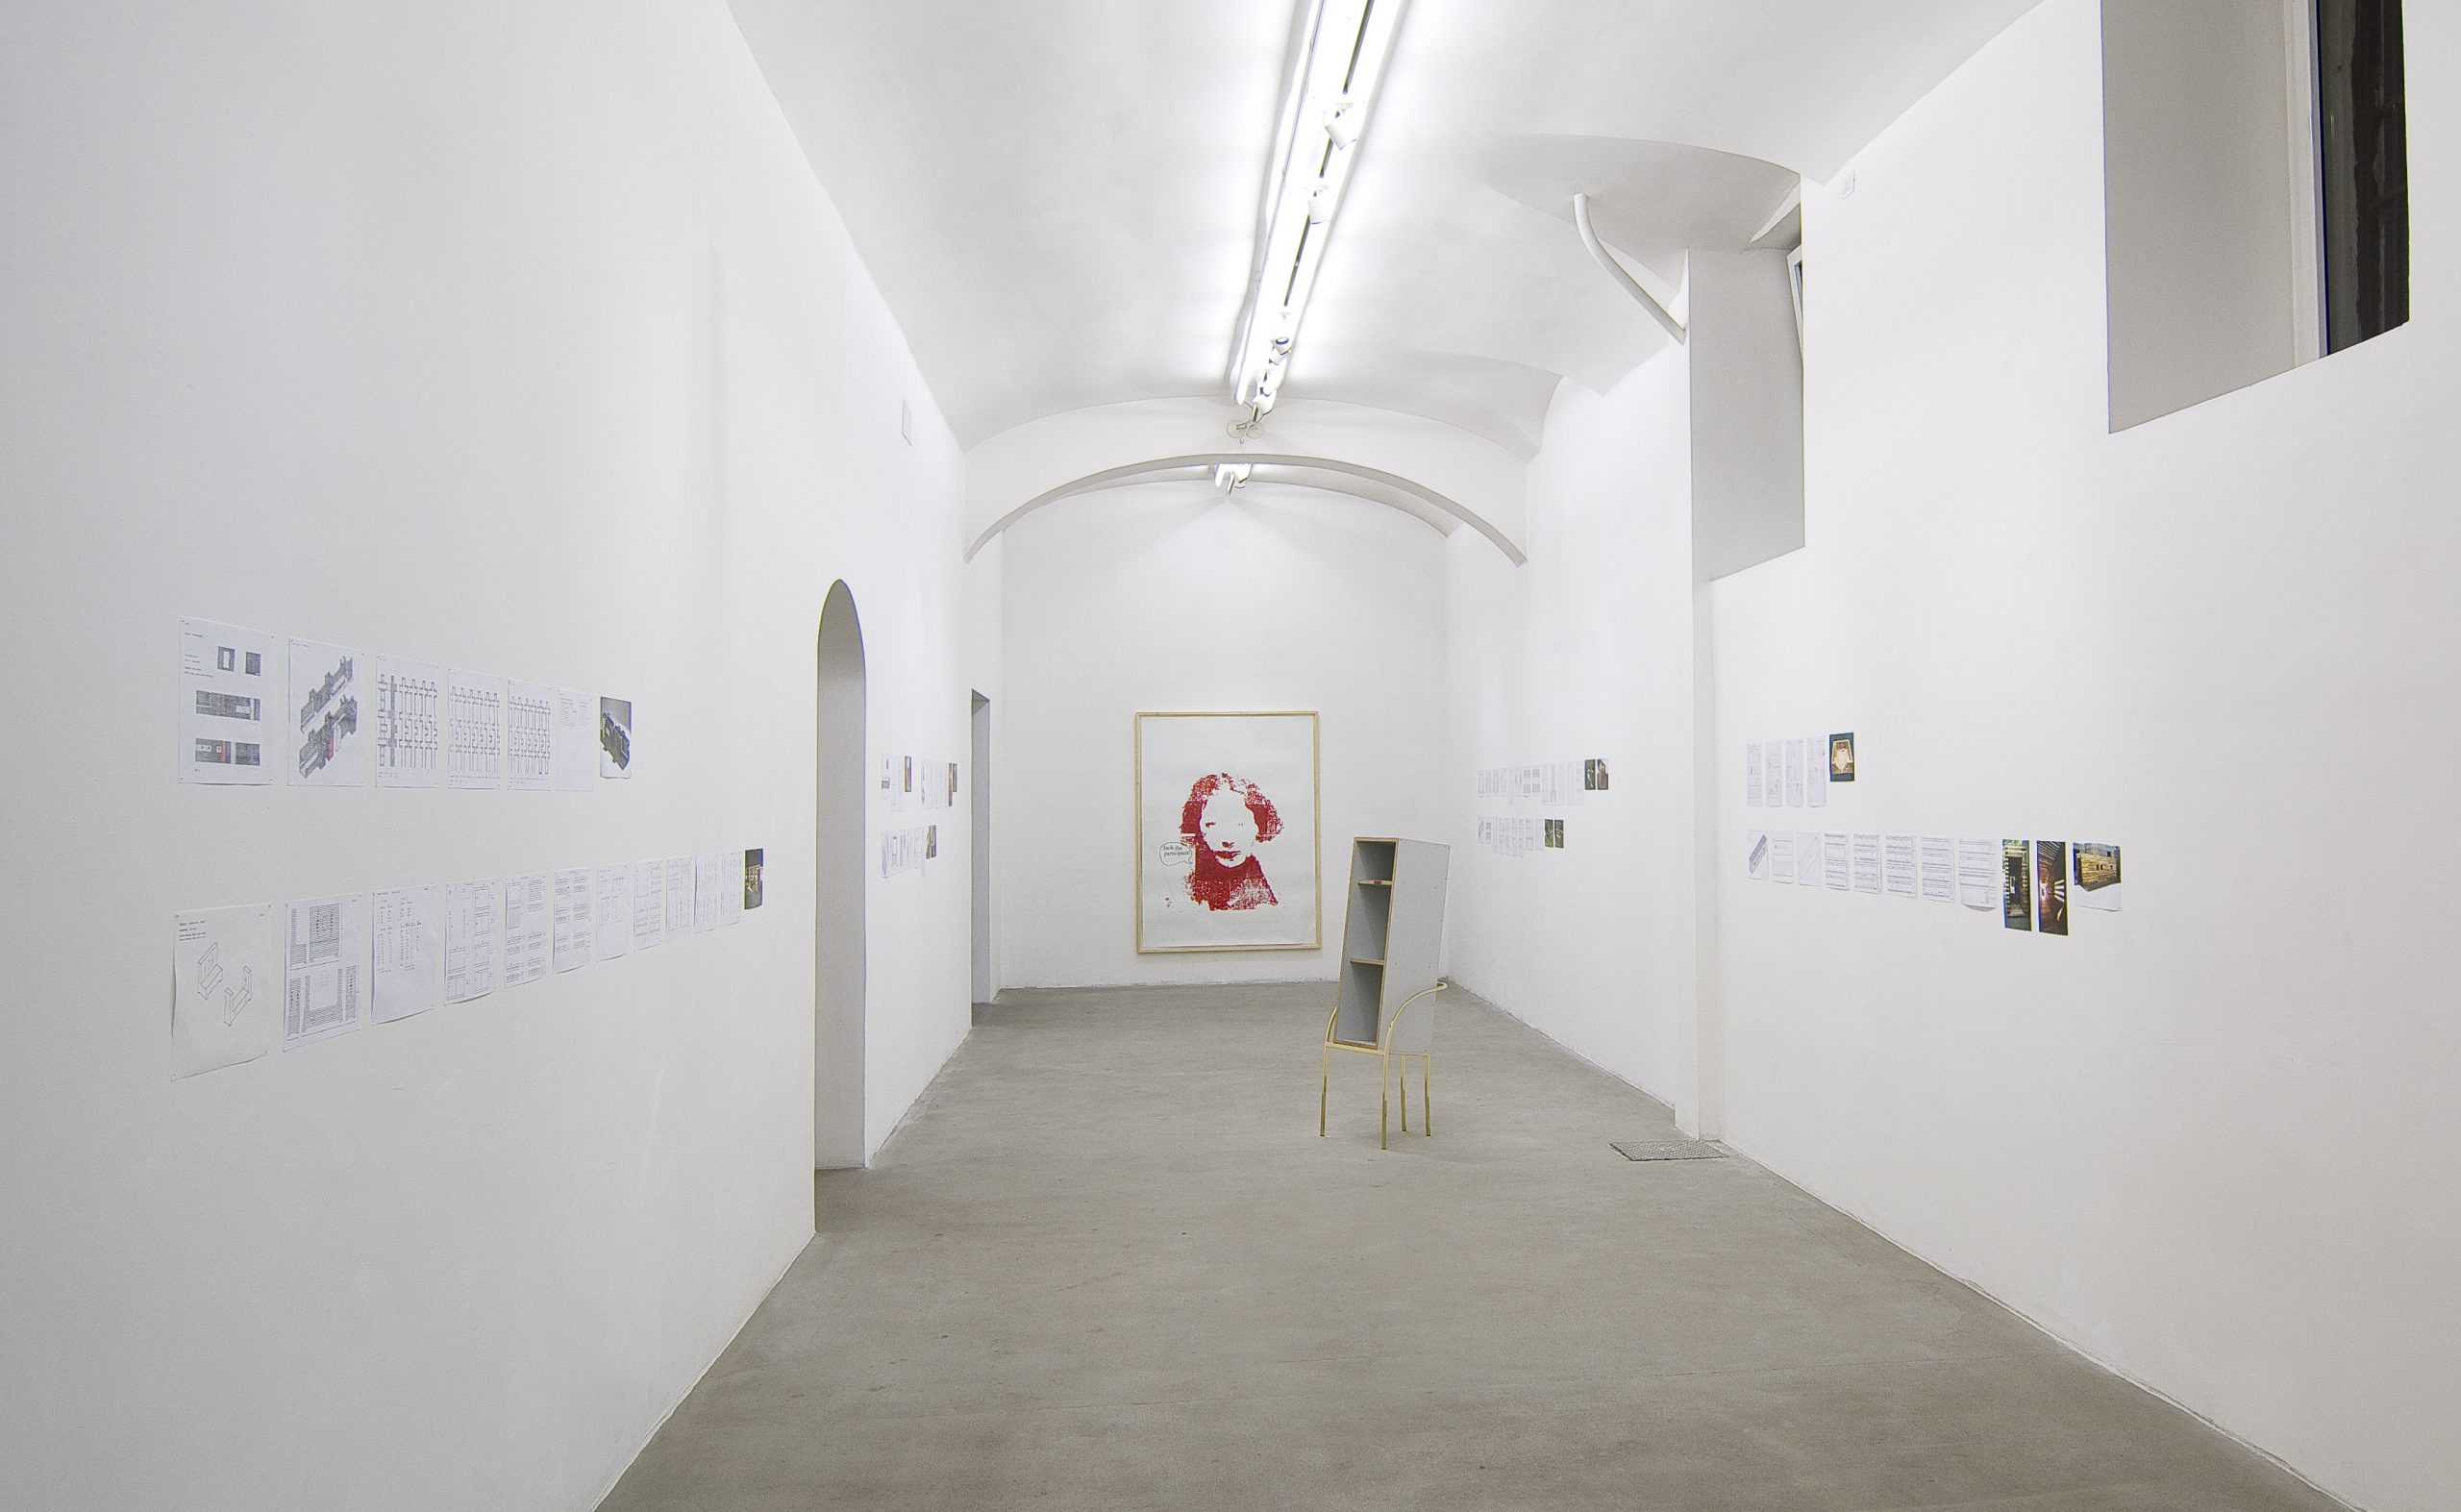 Oscar Tuazon, Scott Burton. Installation view at Fondazione Giuliani, photo by Giorgio Benni